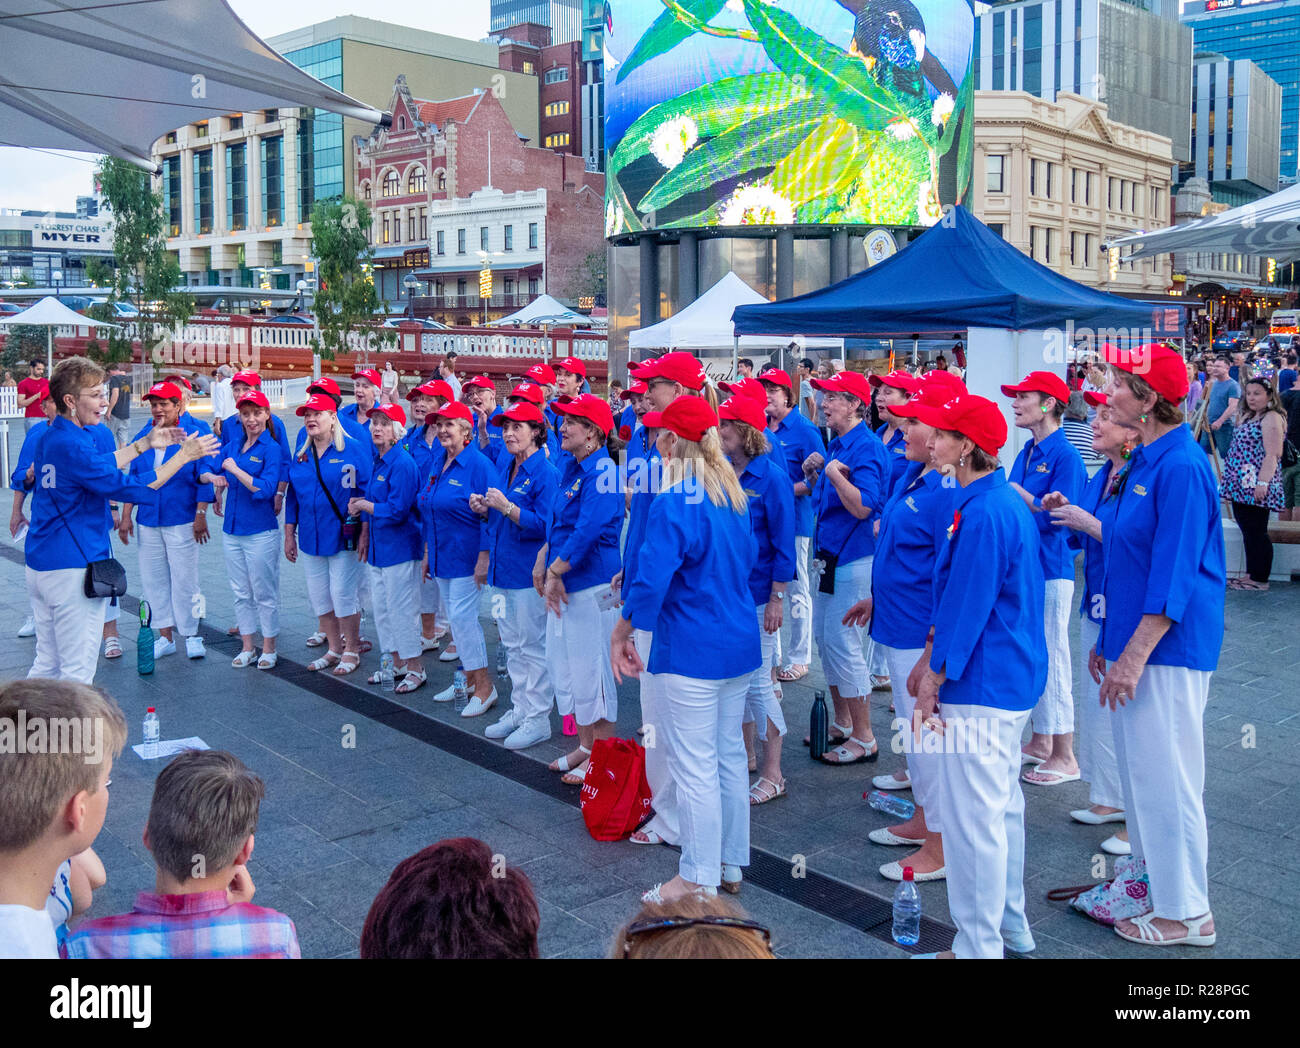 Choeur de femmes chantant des chants de Noël Yagan Square Perth Western Australia. Banque D'Images